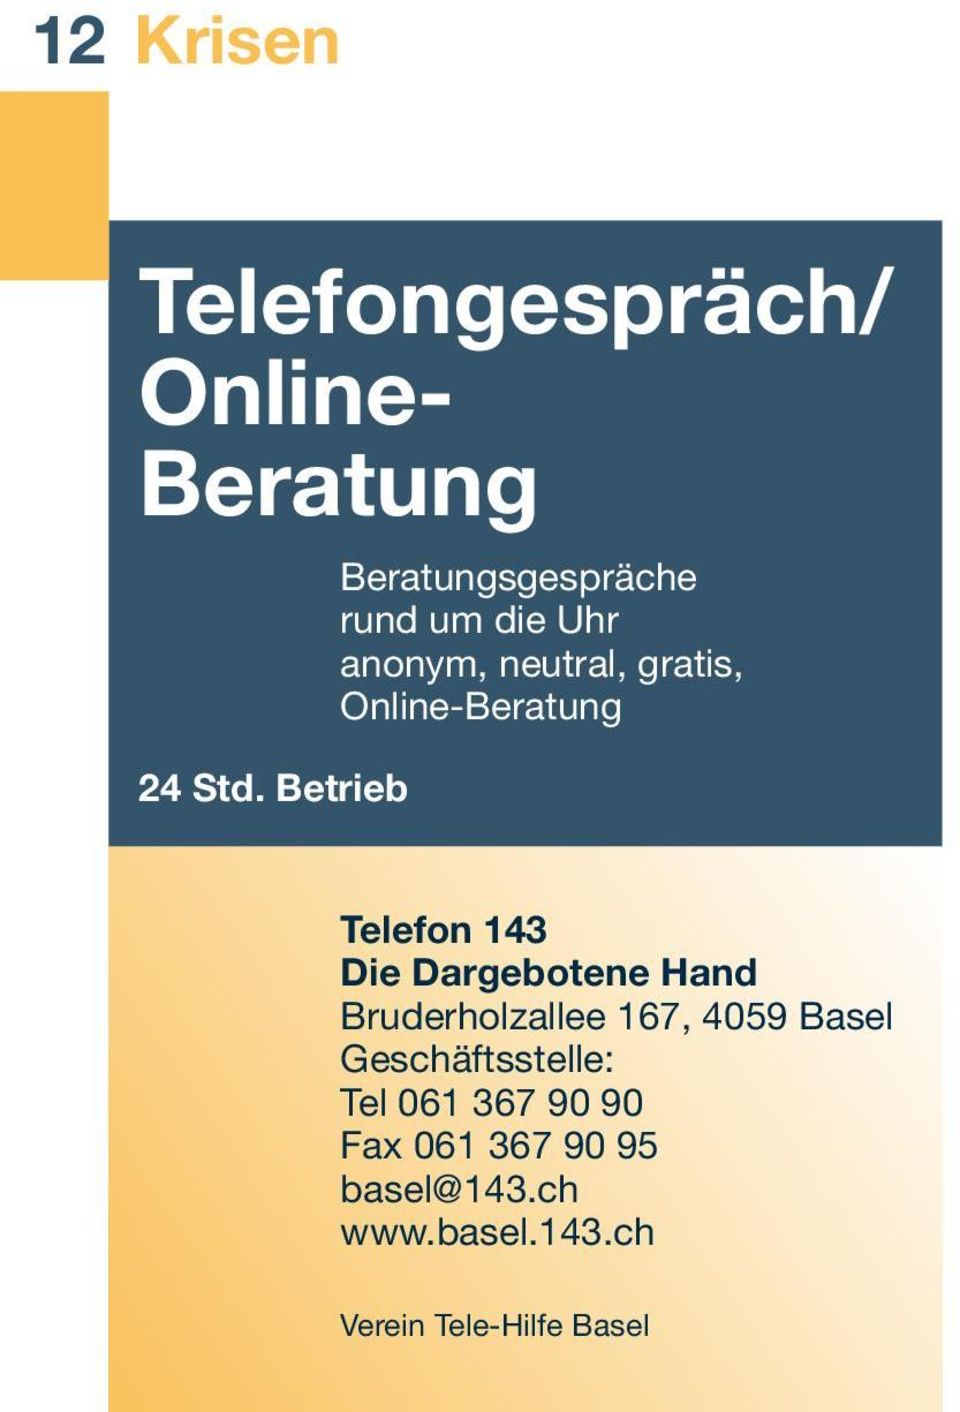 Online-Beratung Telefon 143 Die Dargebotene Hand Bruderholzallee 167, 4059